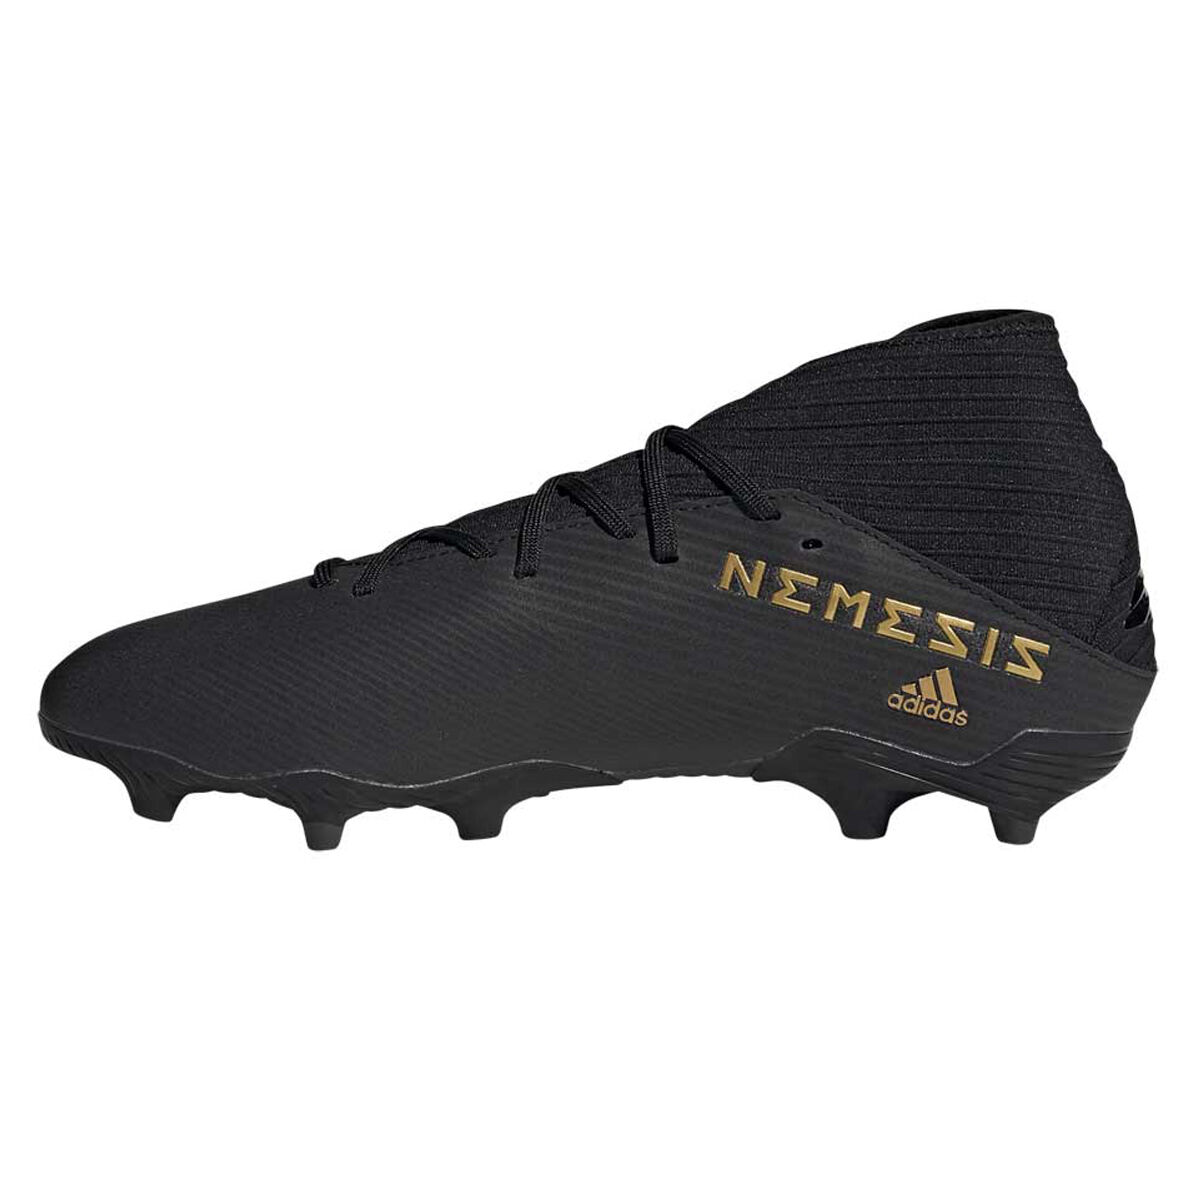 all black nemeziz boots